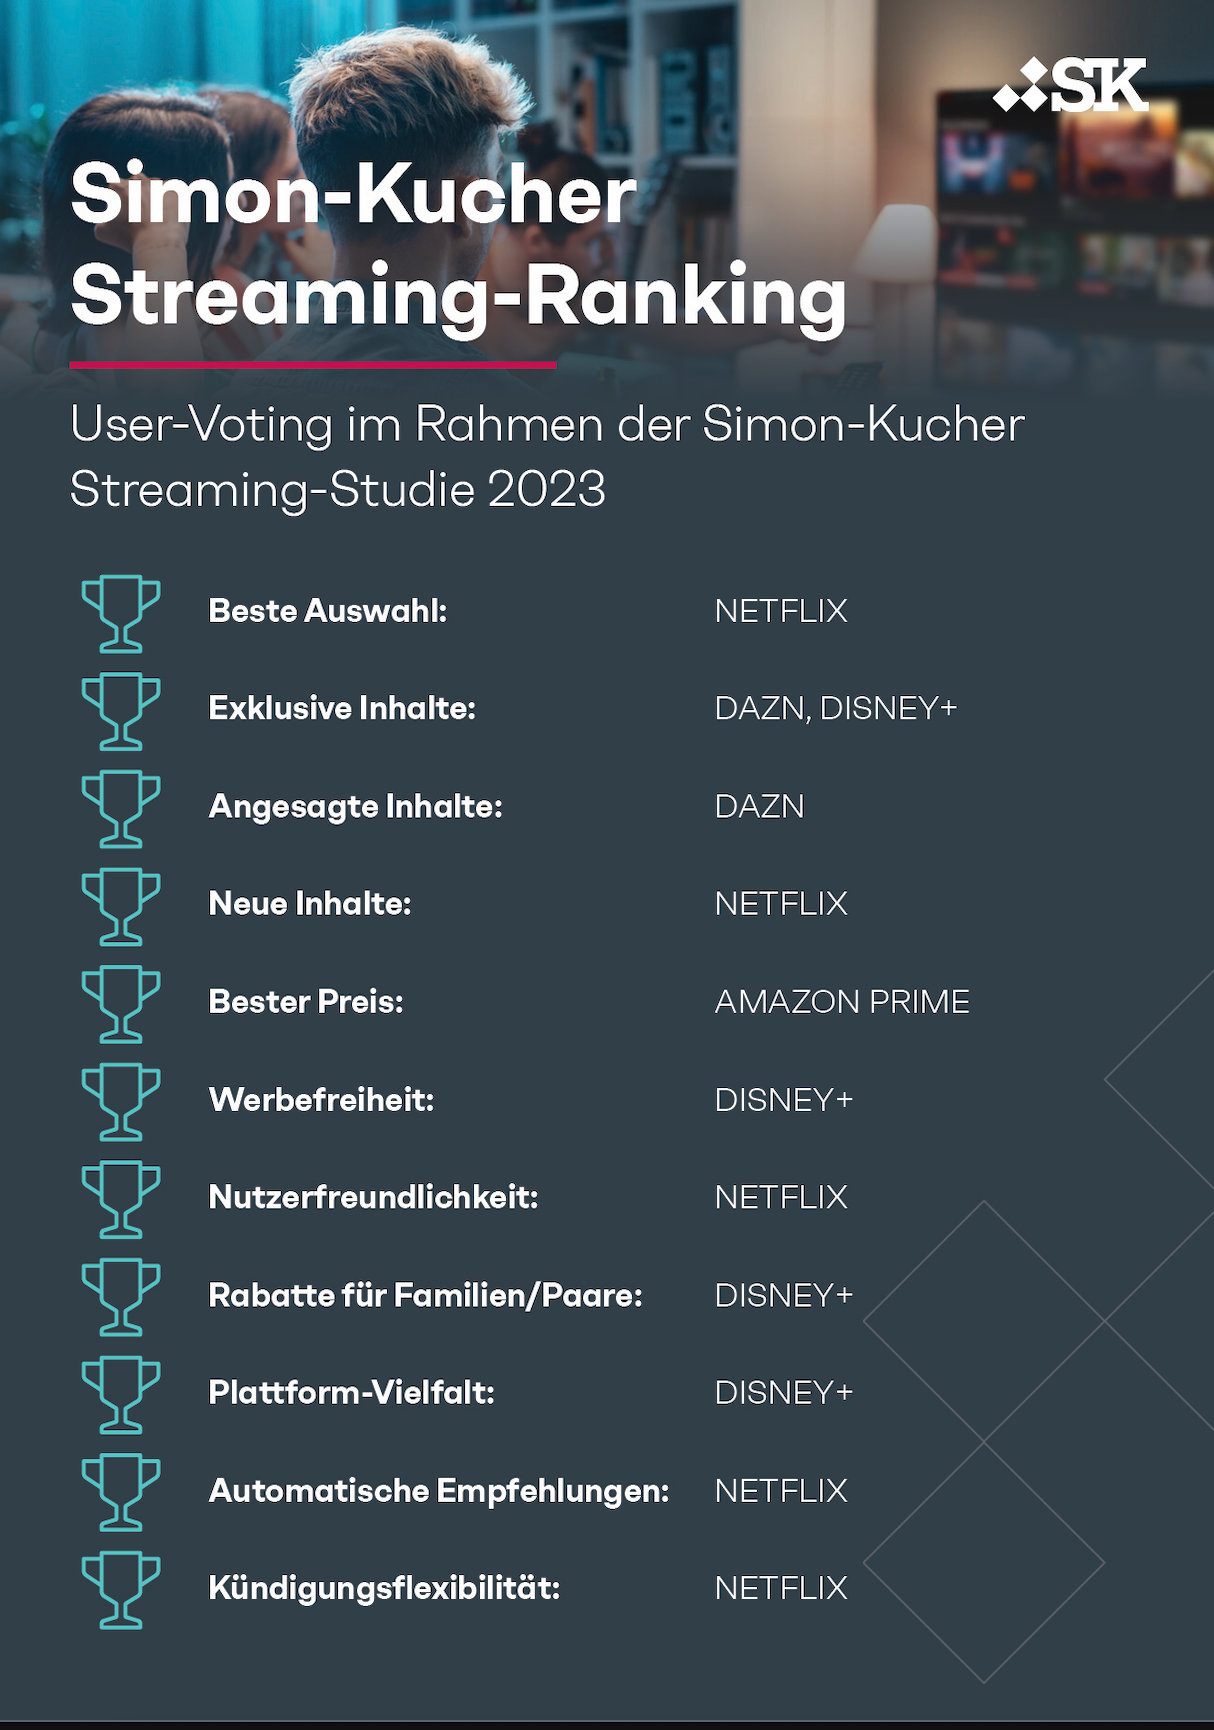 Streaming-Studie Netflix in Deutschland am beliebtesten, DAZN und WOW gelten als überteuert